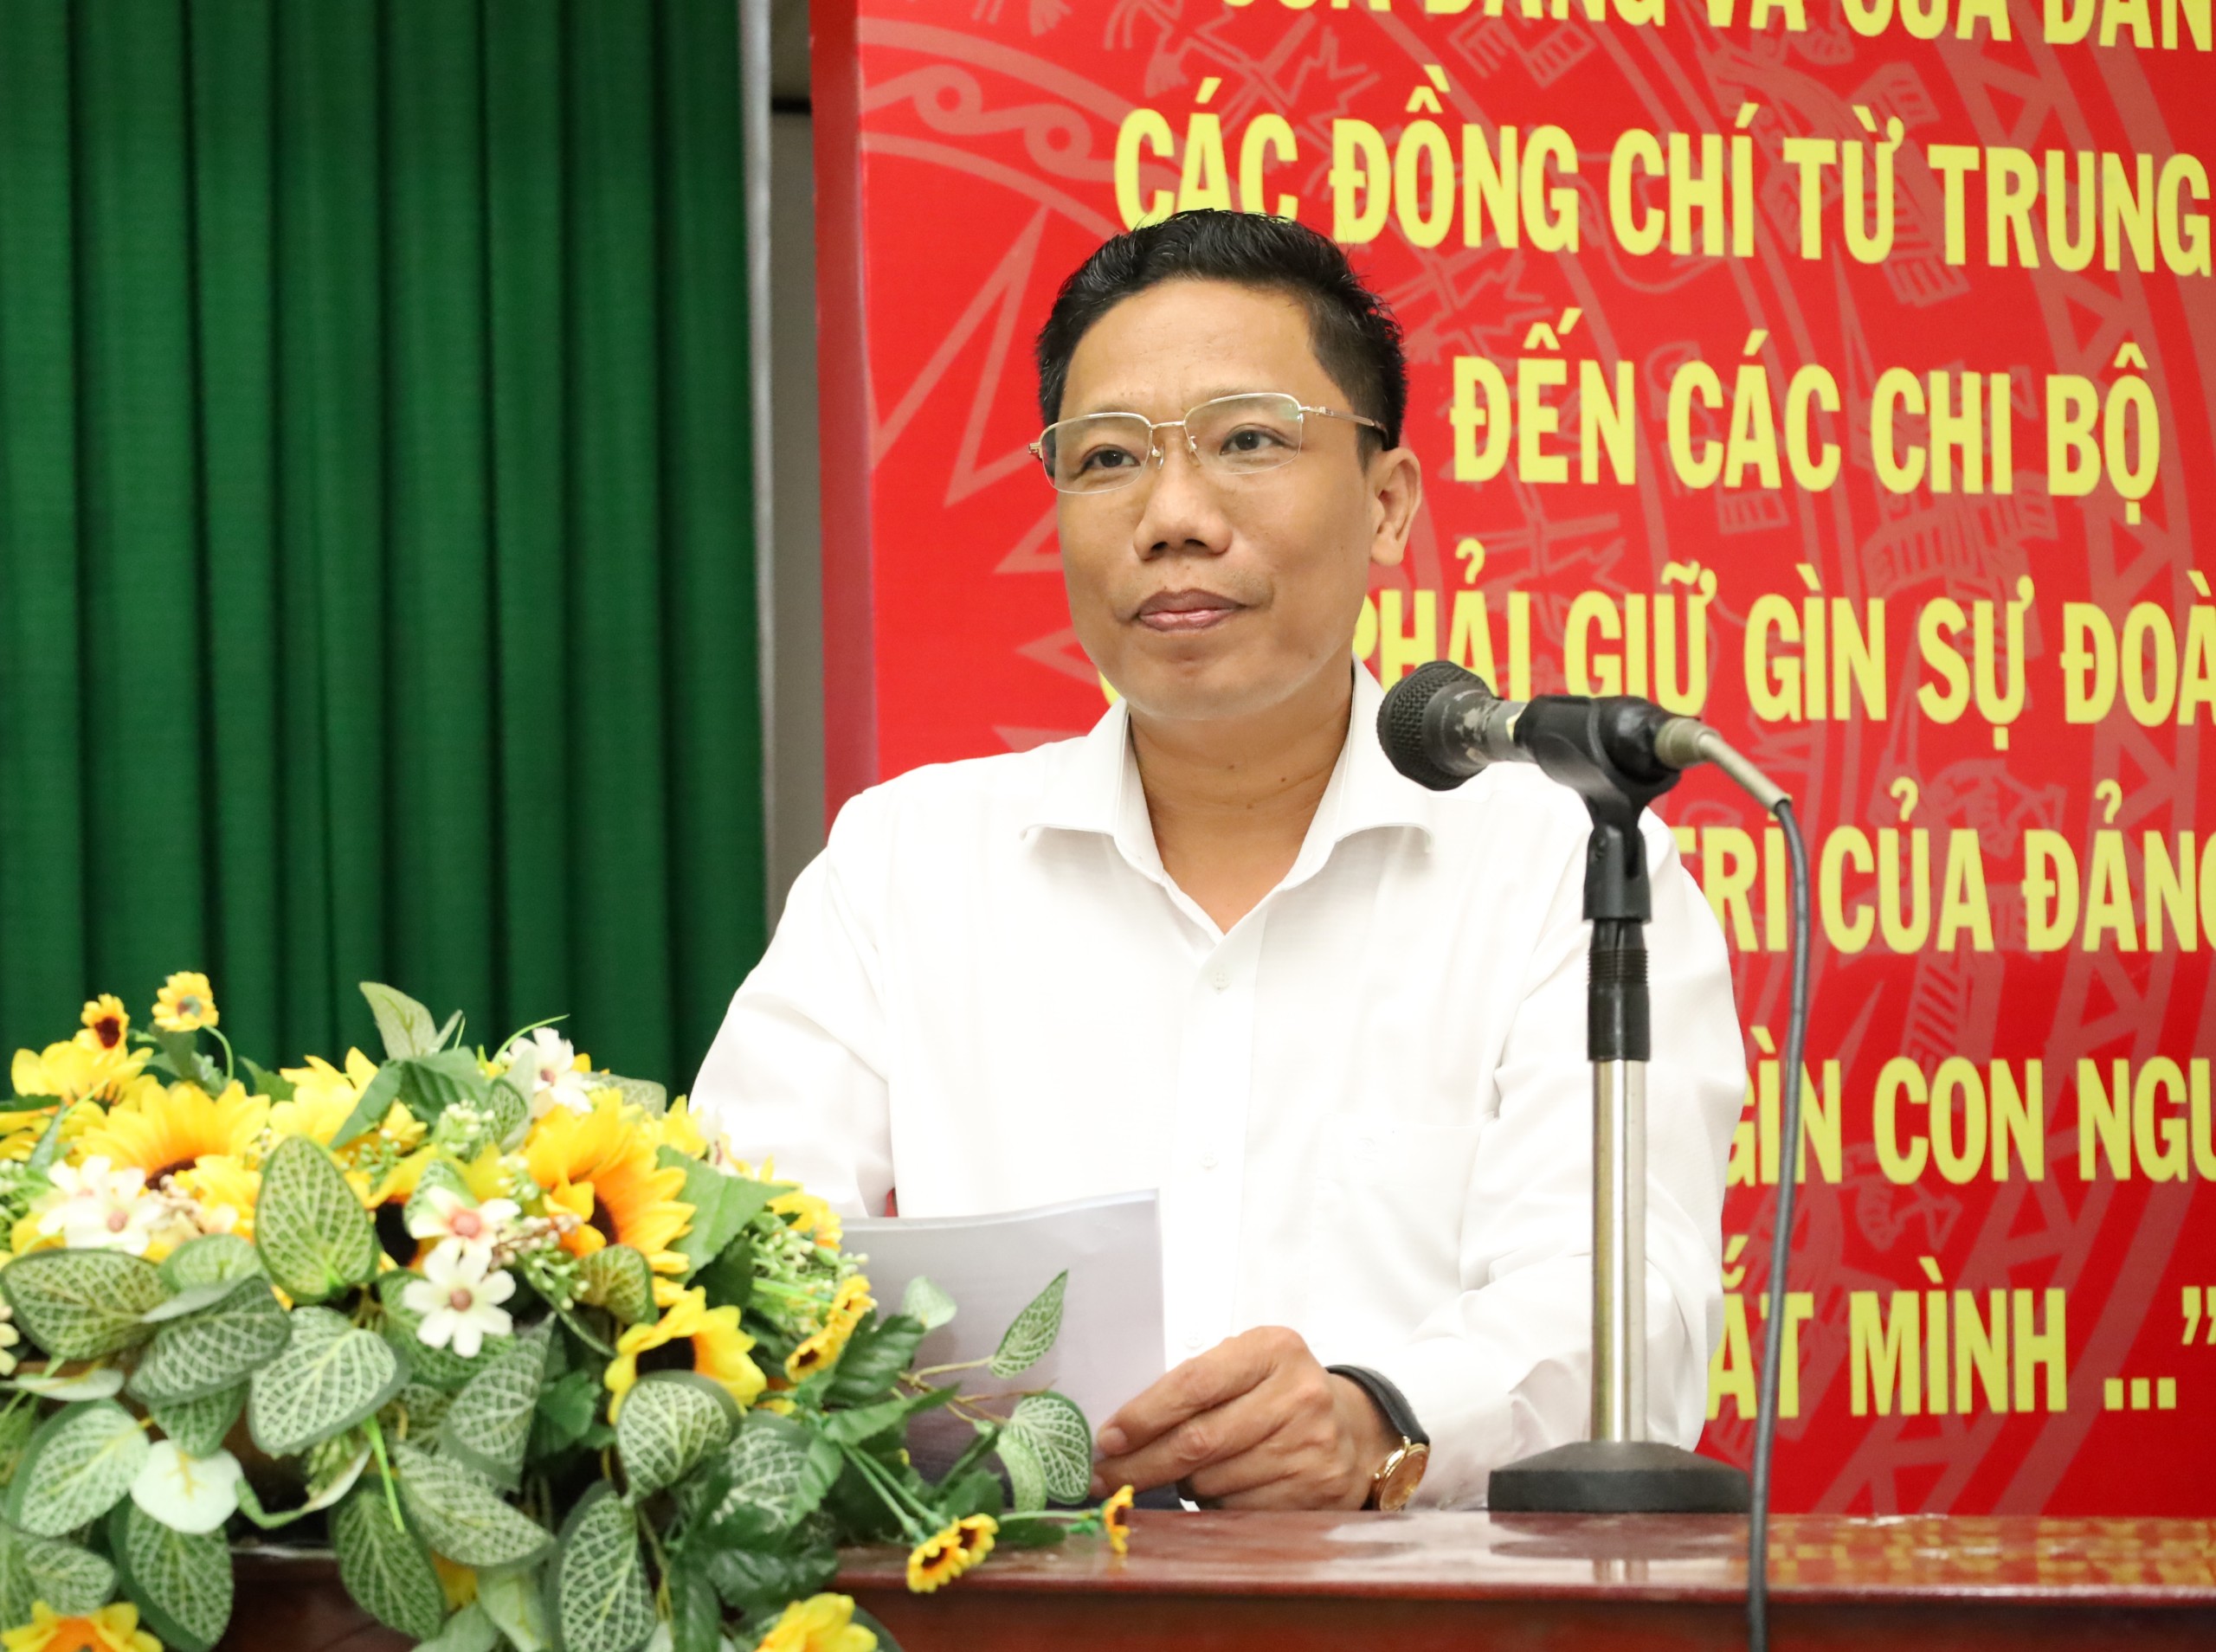 Ông Nguyễn Thực Hiện - Phó Chủ tịch UBND TP. Cần Thơ phát biểu chào mừng hội nghị sơ kết 6 tháng đầu năm của Cụm hợp tác, liên kết phát triển du lịch phía Tây ĐBSCL.